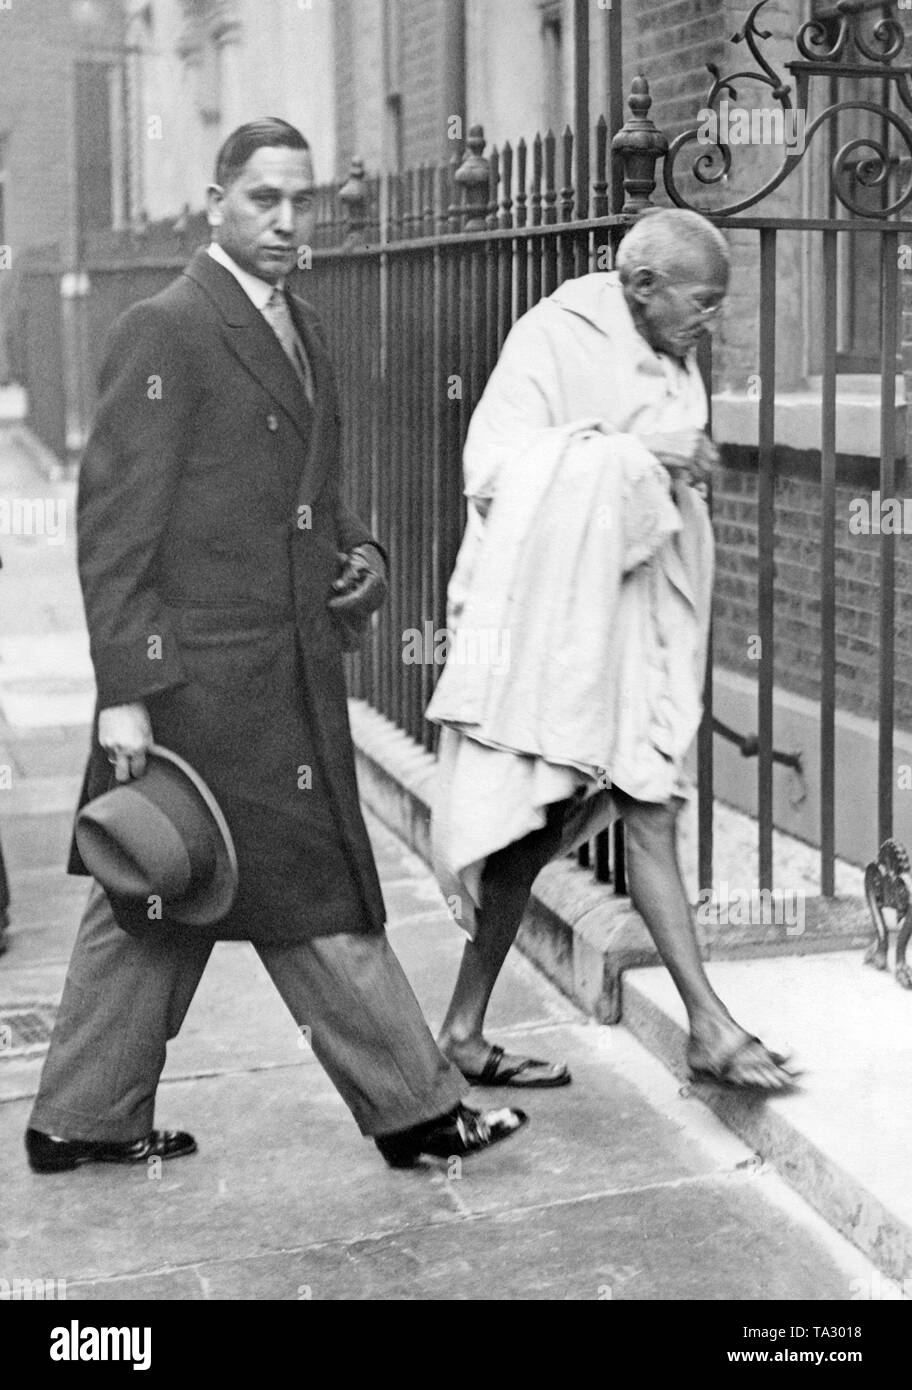 Le chef du mouvement nationaliste indien Mahatma Gandhi sur la façon d'une réunion avec le Premier ministre britannique Ramsay MacDonald, au 10 Downing Street. La raison de la réunion est l'échec de la Conférence de Table Ronde des Indiens. Banque D'Images